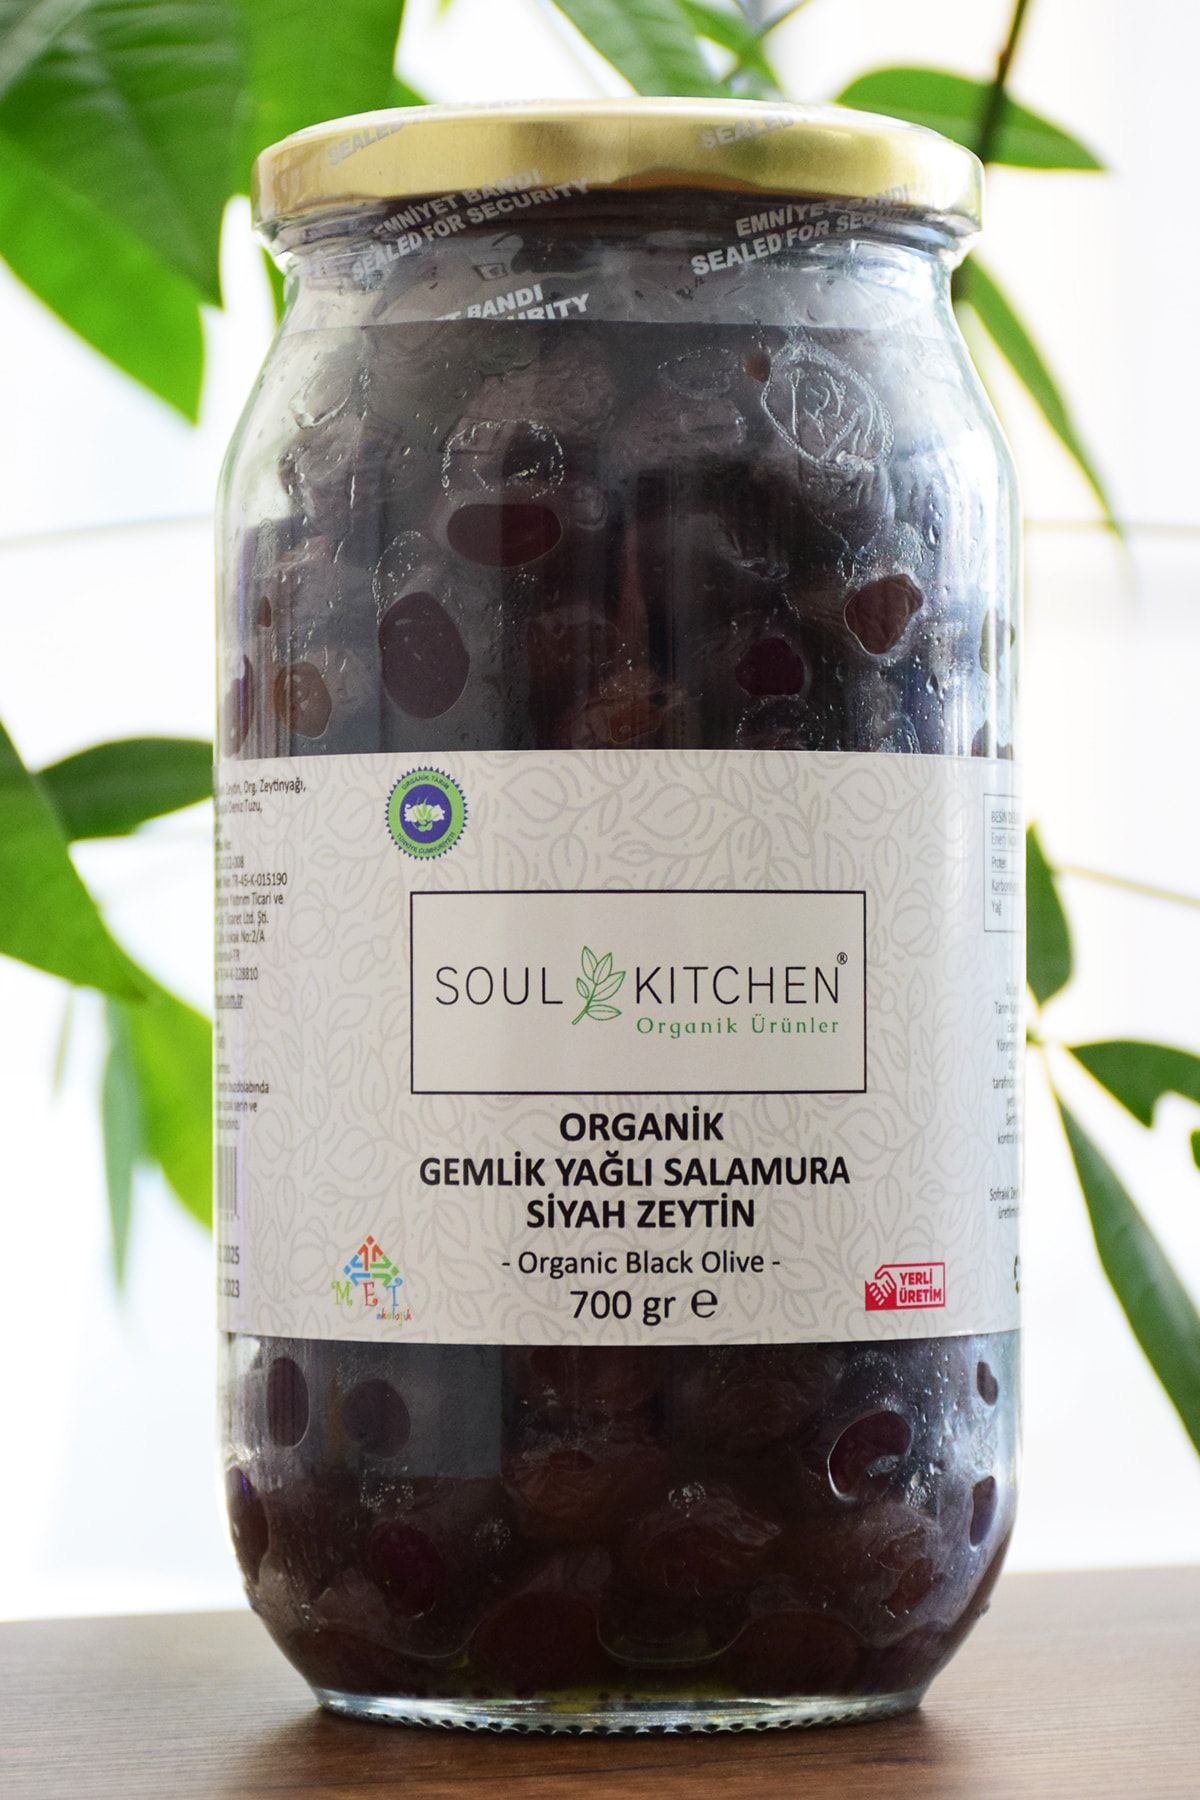 Soul Kitchen Organik Ürünler Organik Gemlik Yağlı Salamura Zeytin 700gr